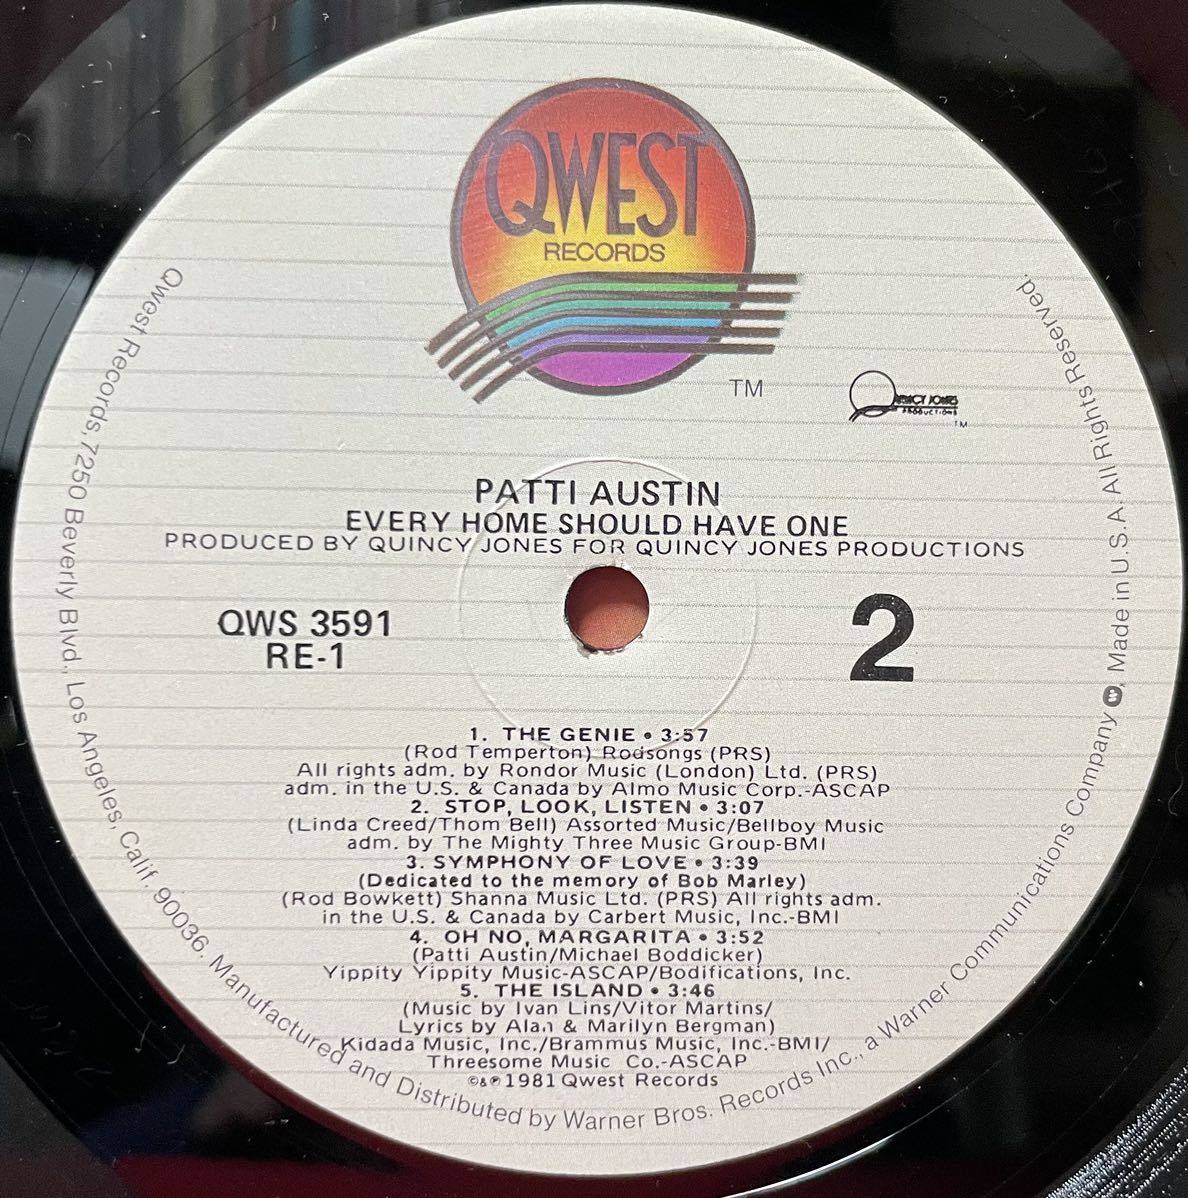 Patti Austin オリジナルUS盤 Do You Love Me?収録 12inch盤その他にもプロモーション盤 レア盤 人気レコード 多数出品。の画像4